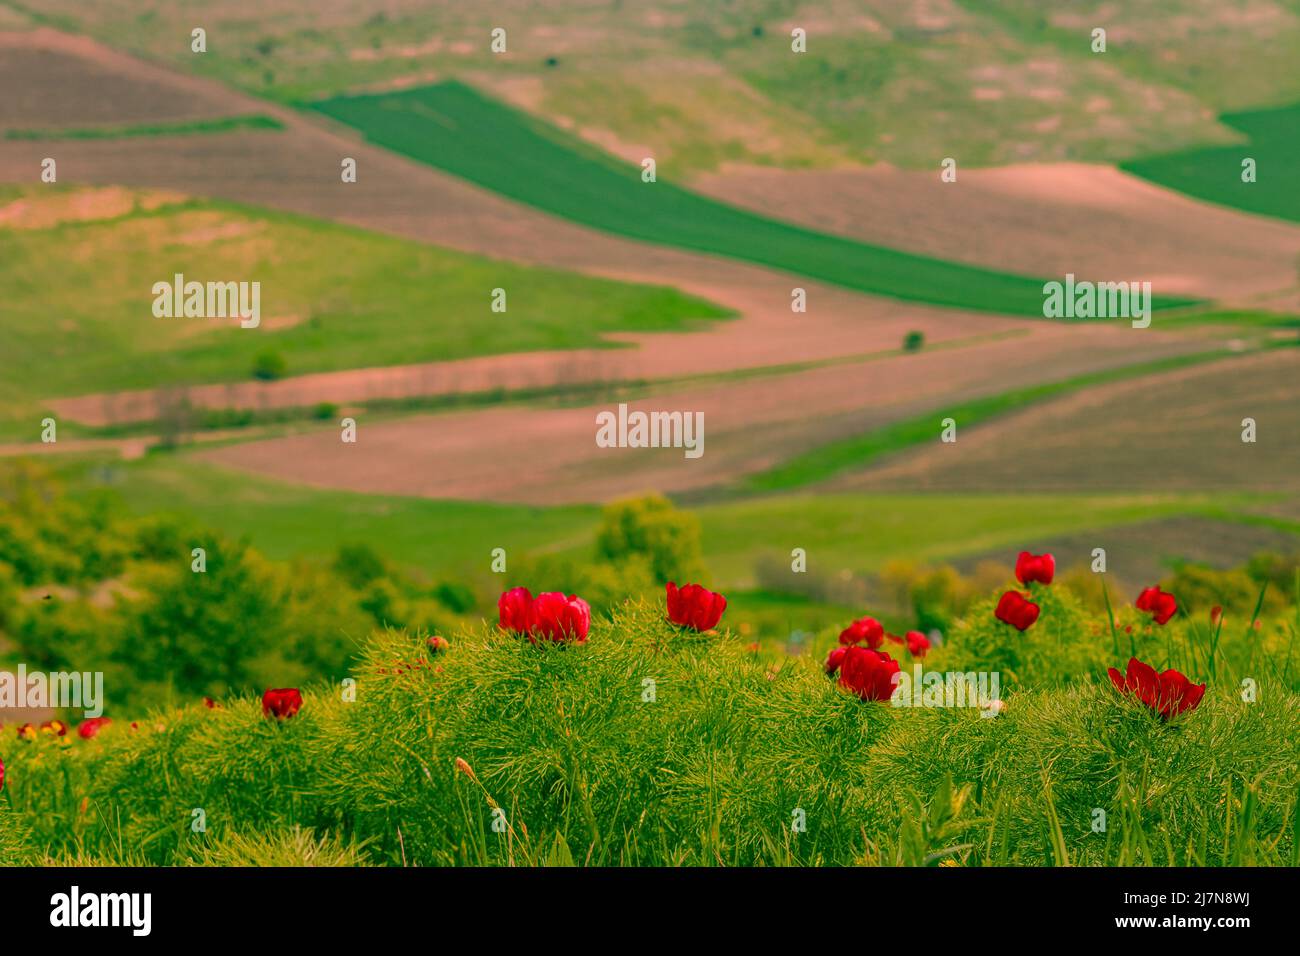 Fotografia paesaggistica in campagna con fiori di peonia rossa in primo piano e campi agricoli su una collina in background. Foto Stock